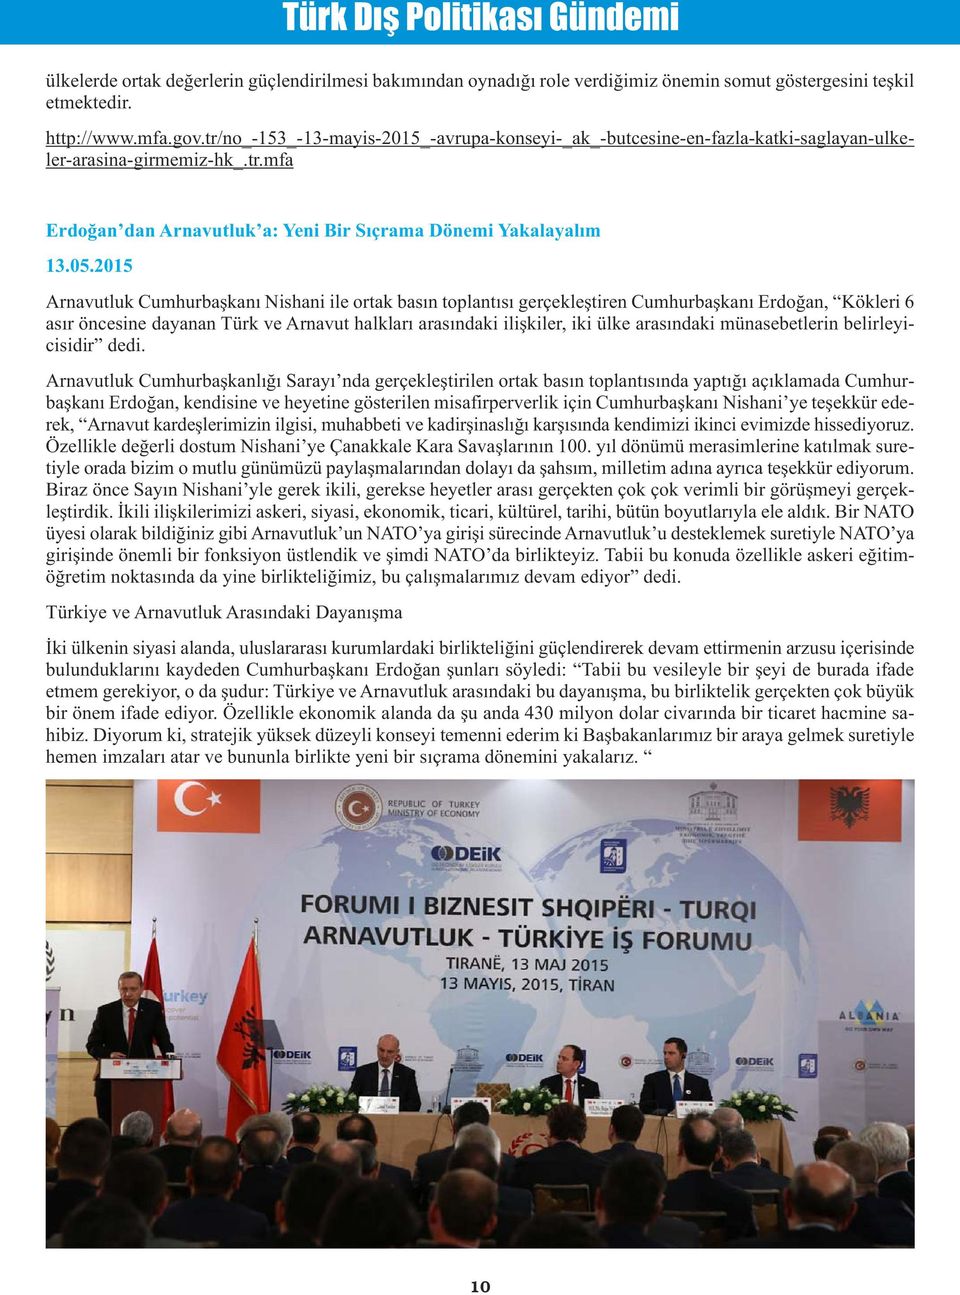 2015 Arnavutluk Cumhurbaşkanı Nishani ile ortak basın toplantısı gerçekleştiren Cumhurbaşkanı Erdoğan, Kökleri 6 asır öncesine dayanan Türk ve Arnavut halkları arasındaki ilişkiler, iki ülke